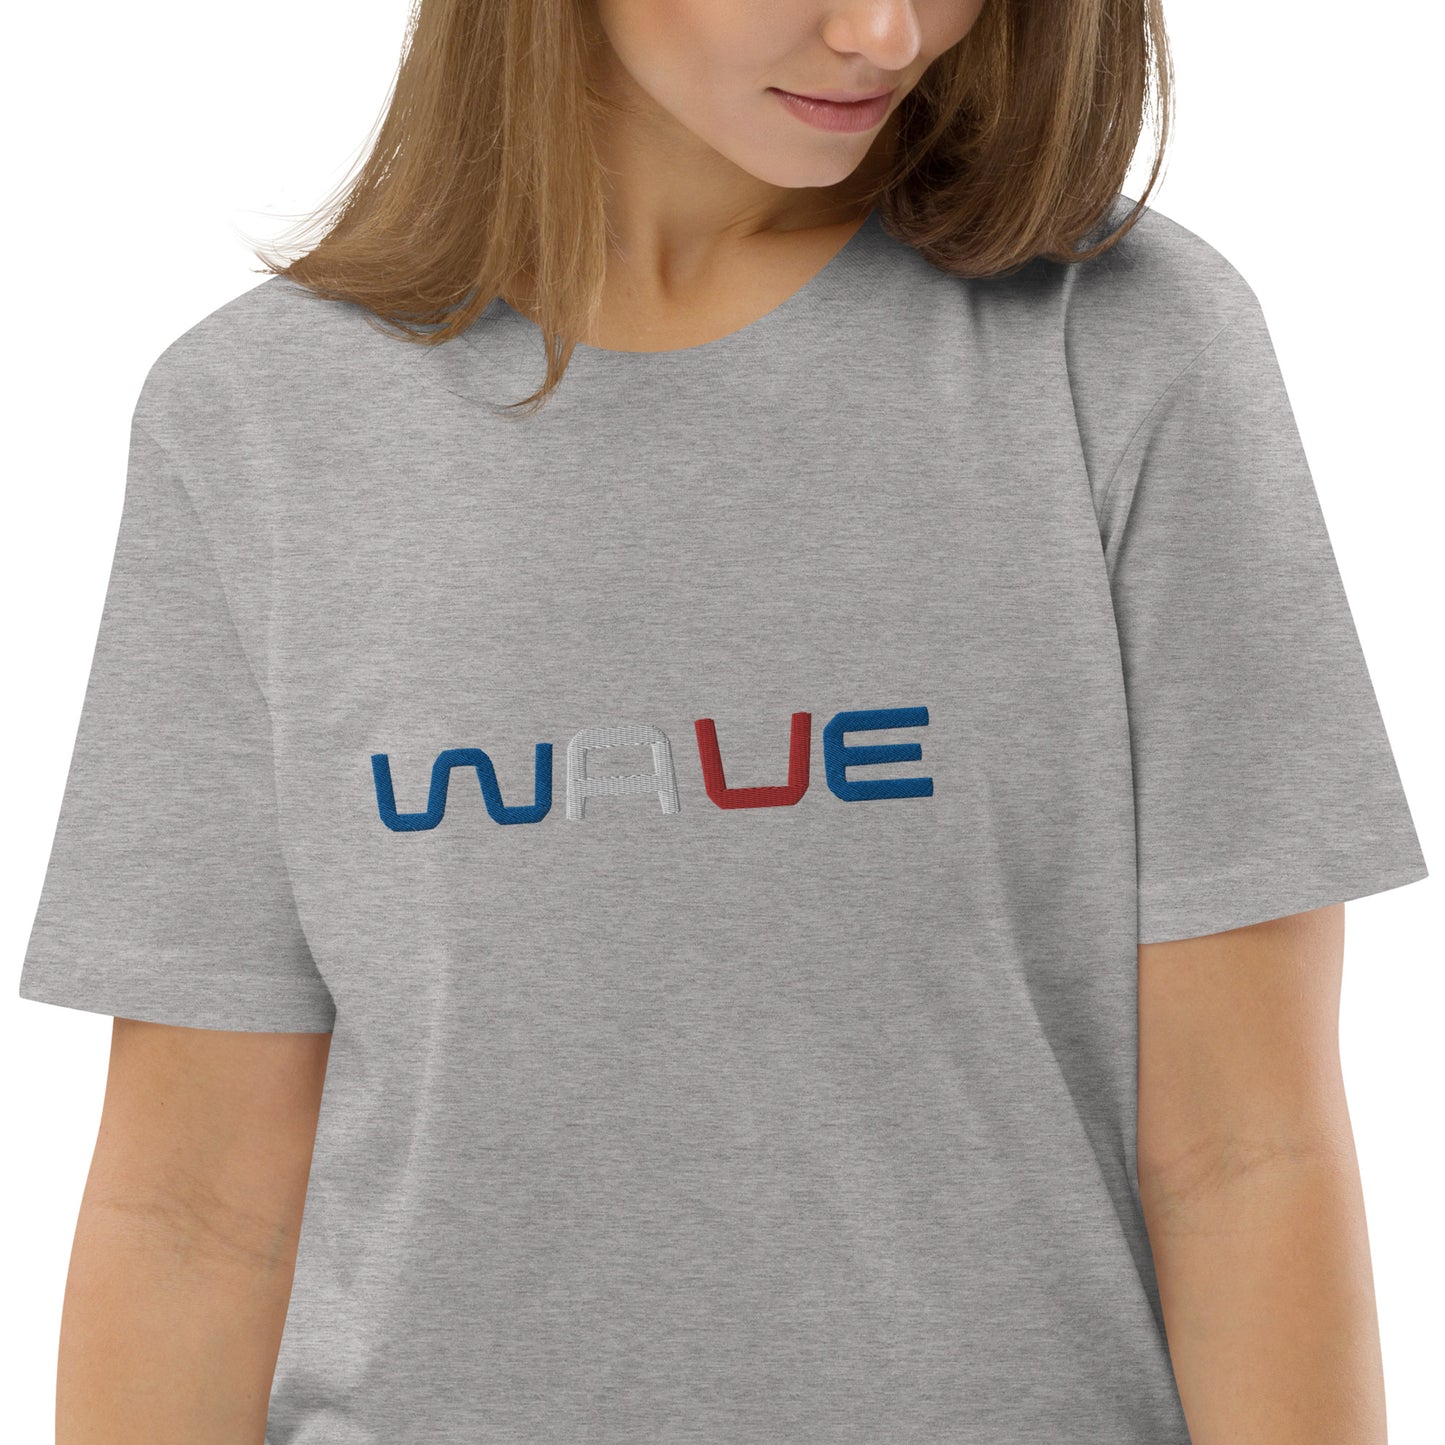 
                  
                    WAVE T-shirt unisexe en coton biologique brodé
                  
                